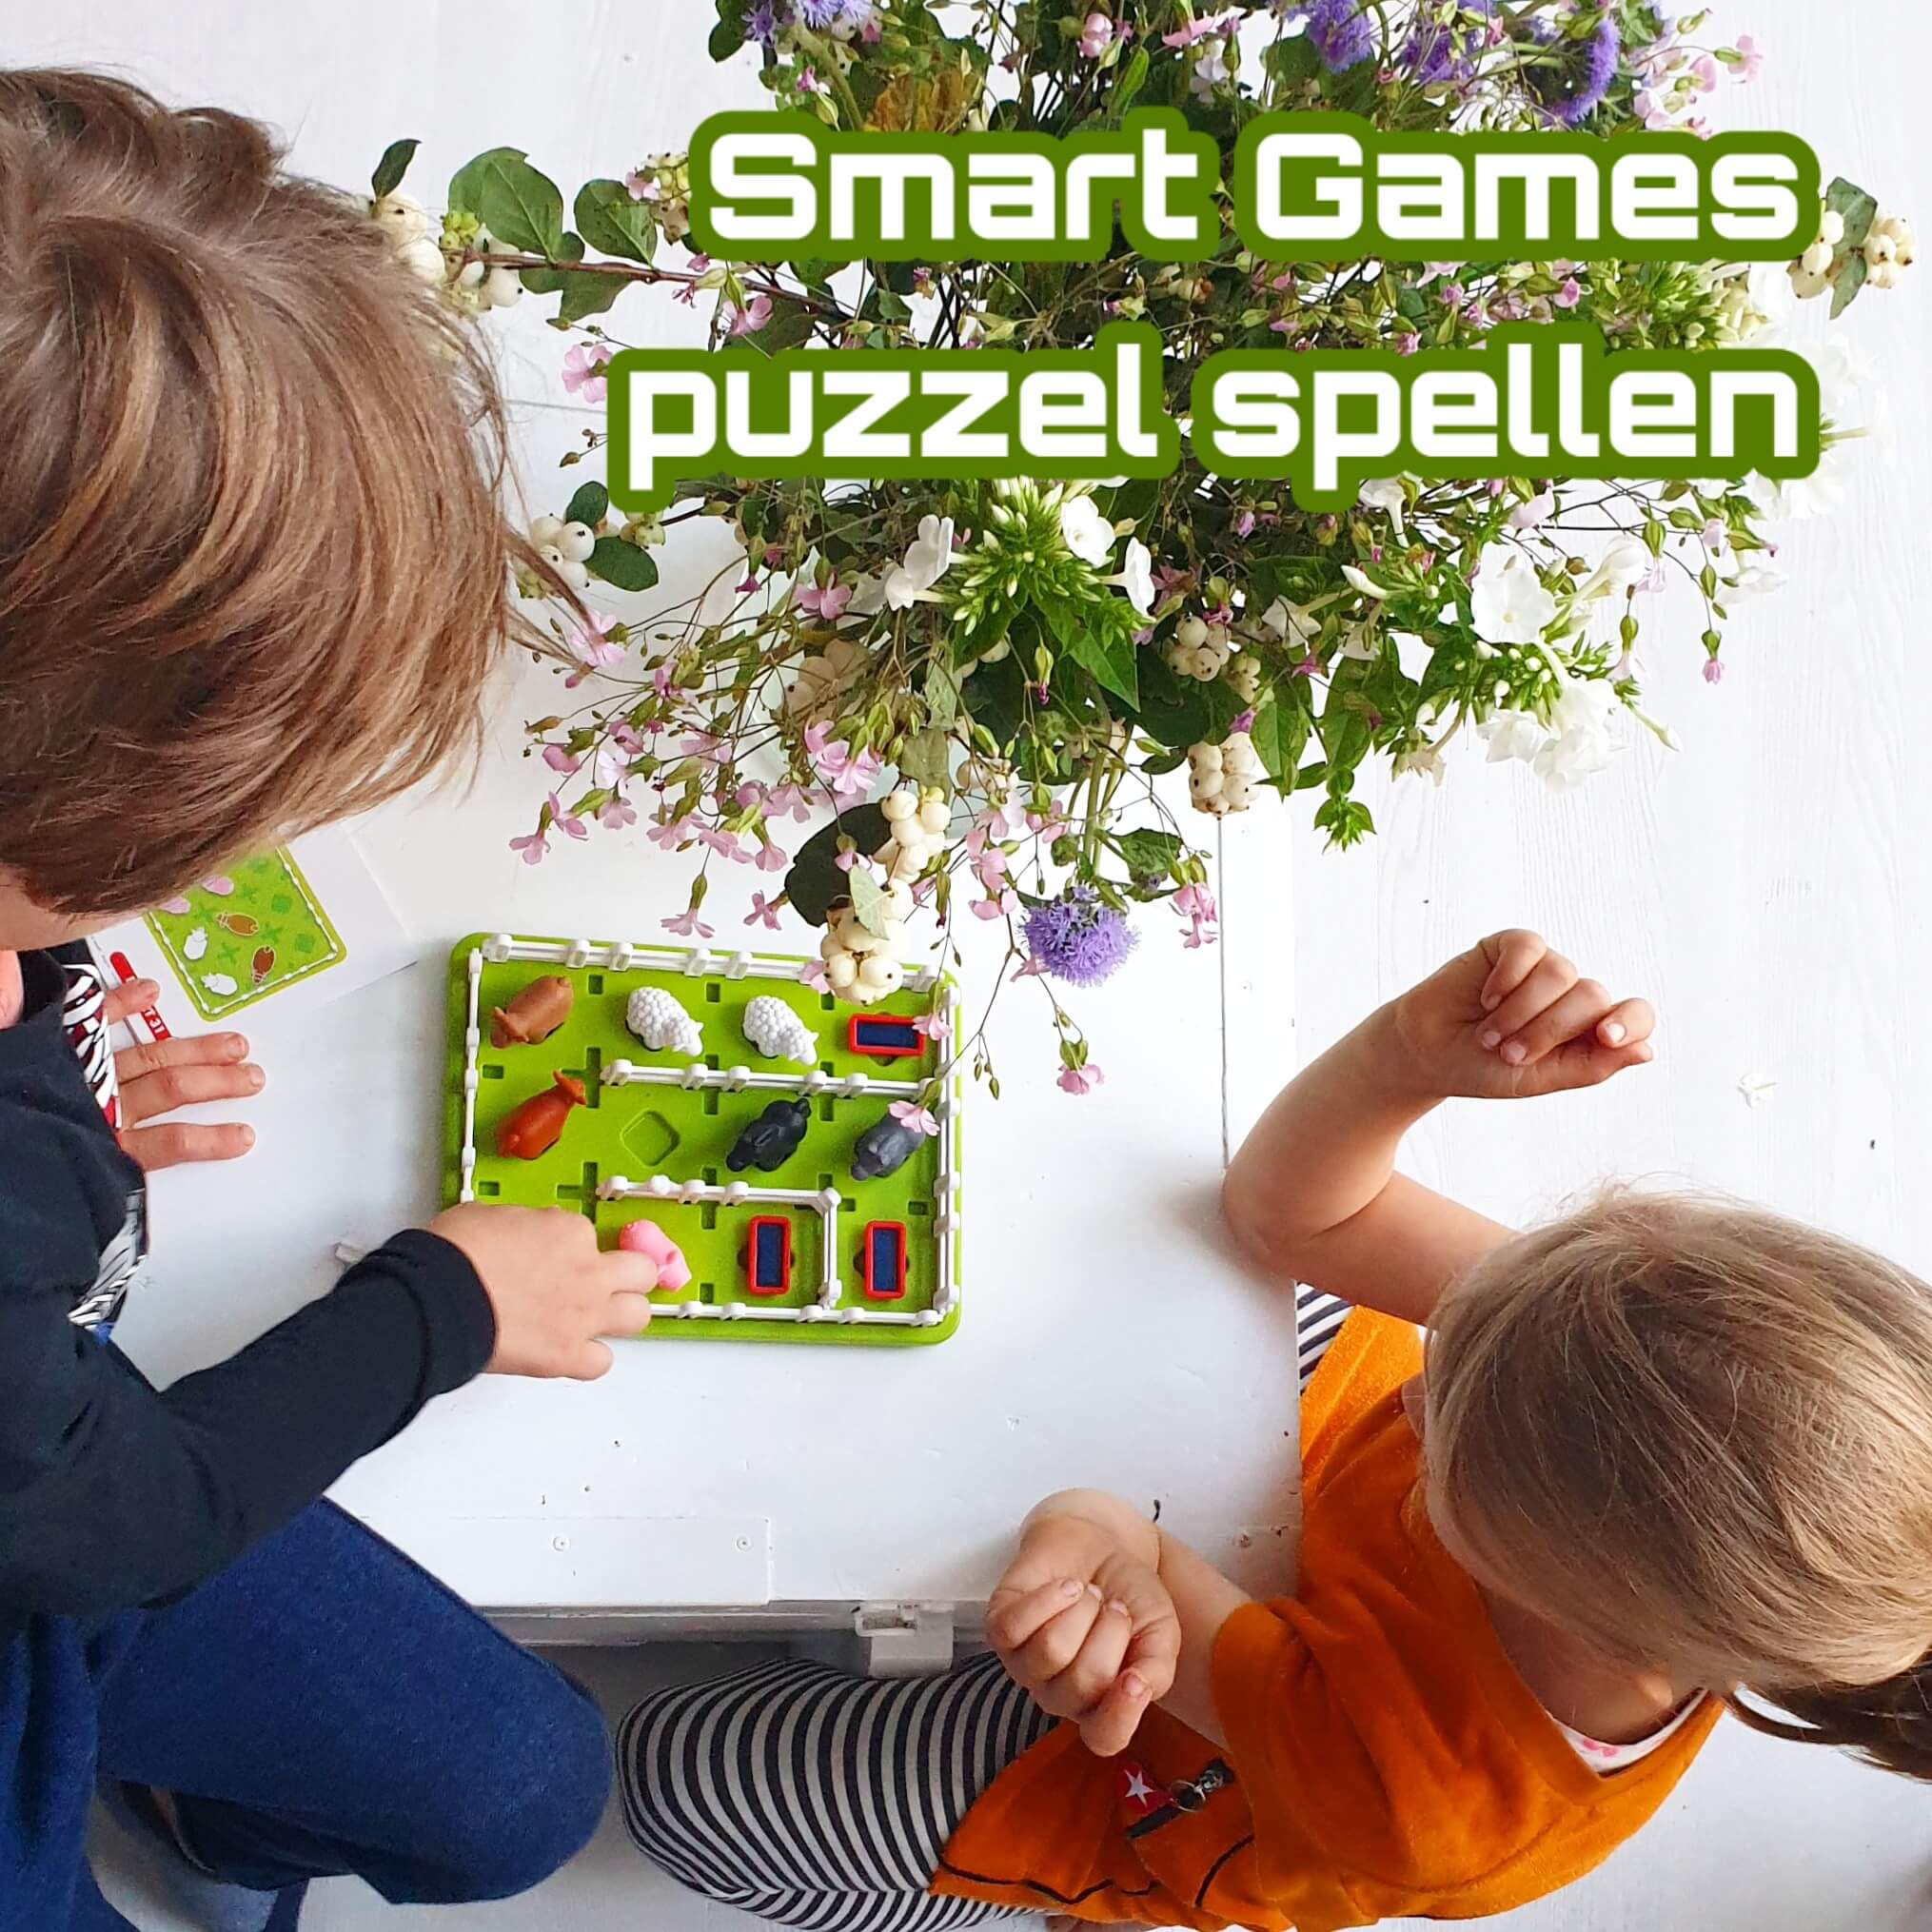 Smart Games: puzzel spelletjes die je alleen of samen kunt doen, maar nooit tegen elkaar